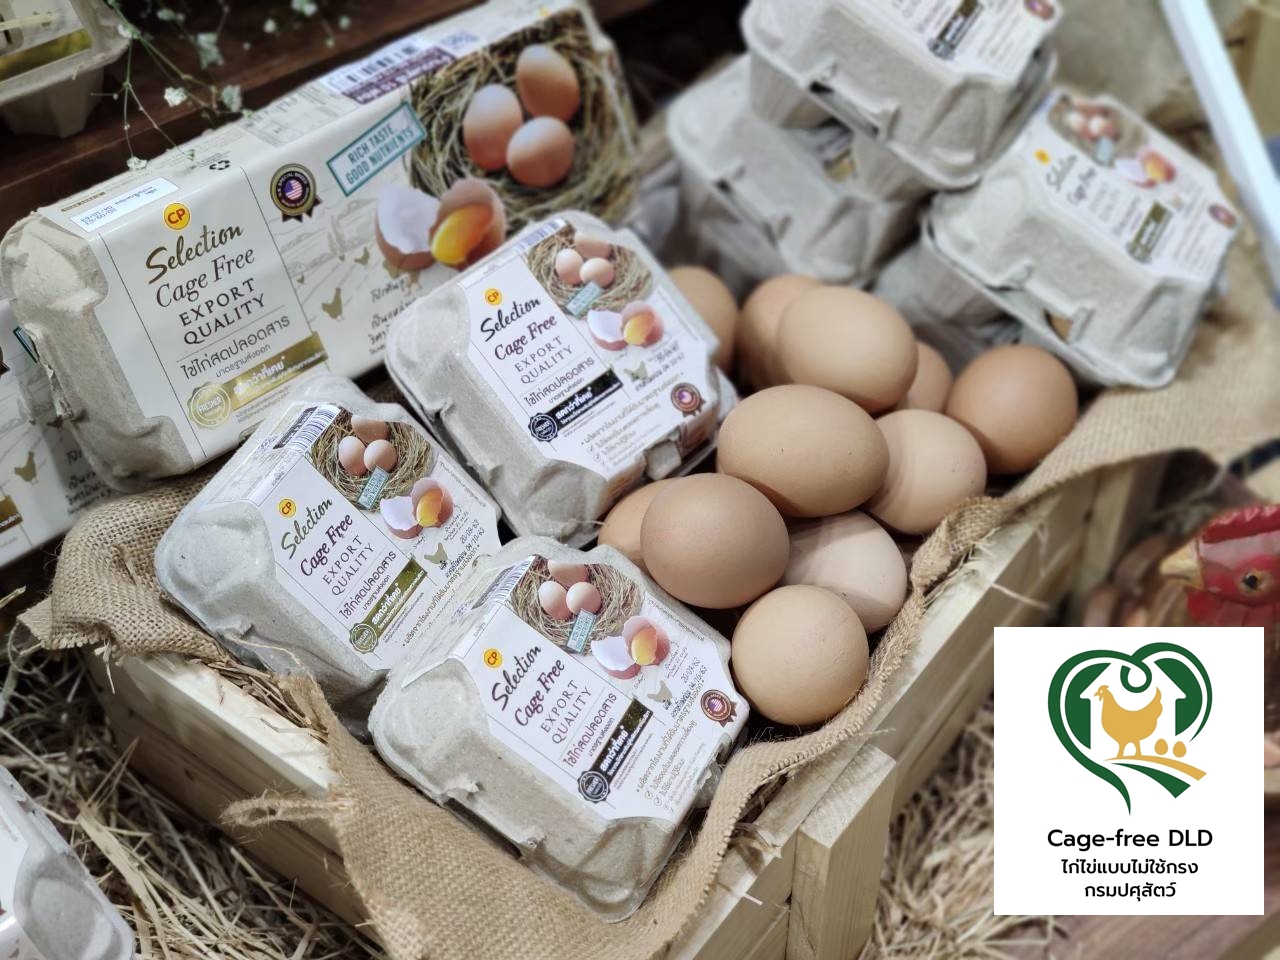 ซีพีเอฟ รับโลโก้มาตรฐานไก่ไข่เคจฟรี เพิ่มความเชื่อมั่นผู้บริโภค ถ่ายทอดความรู้แก่เกษตรกร